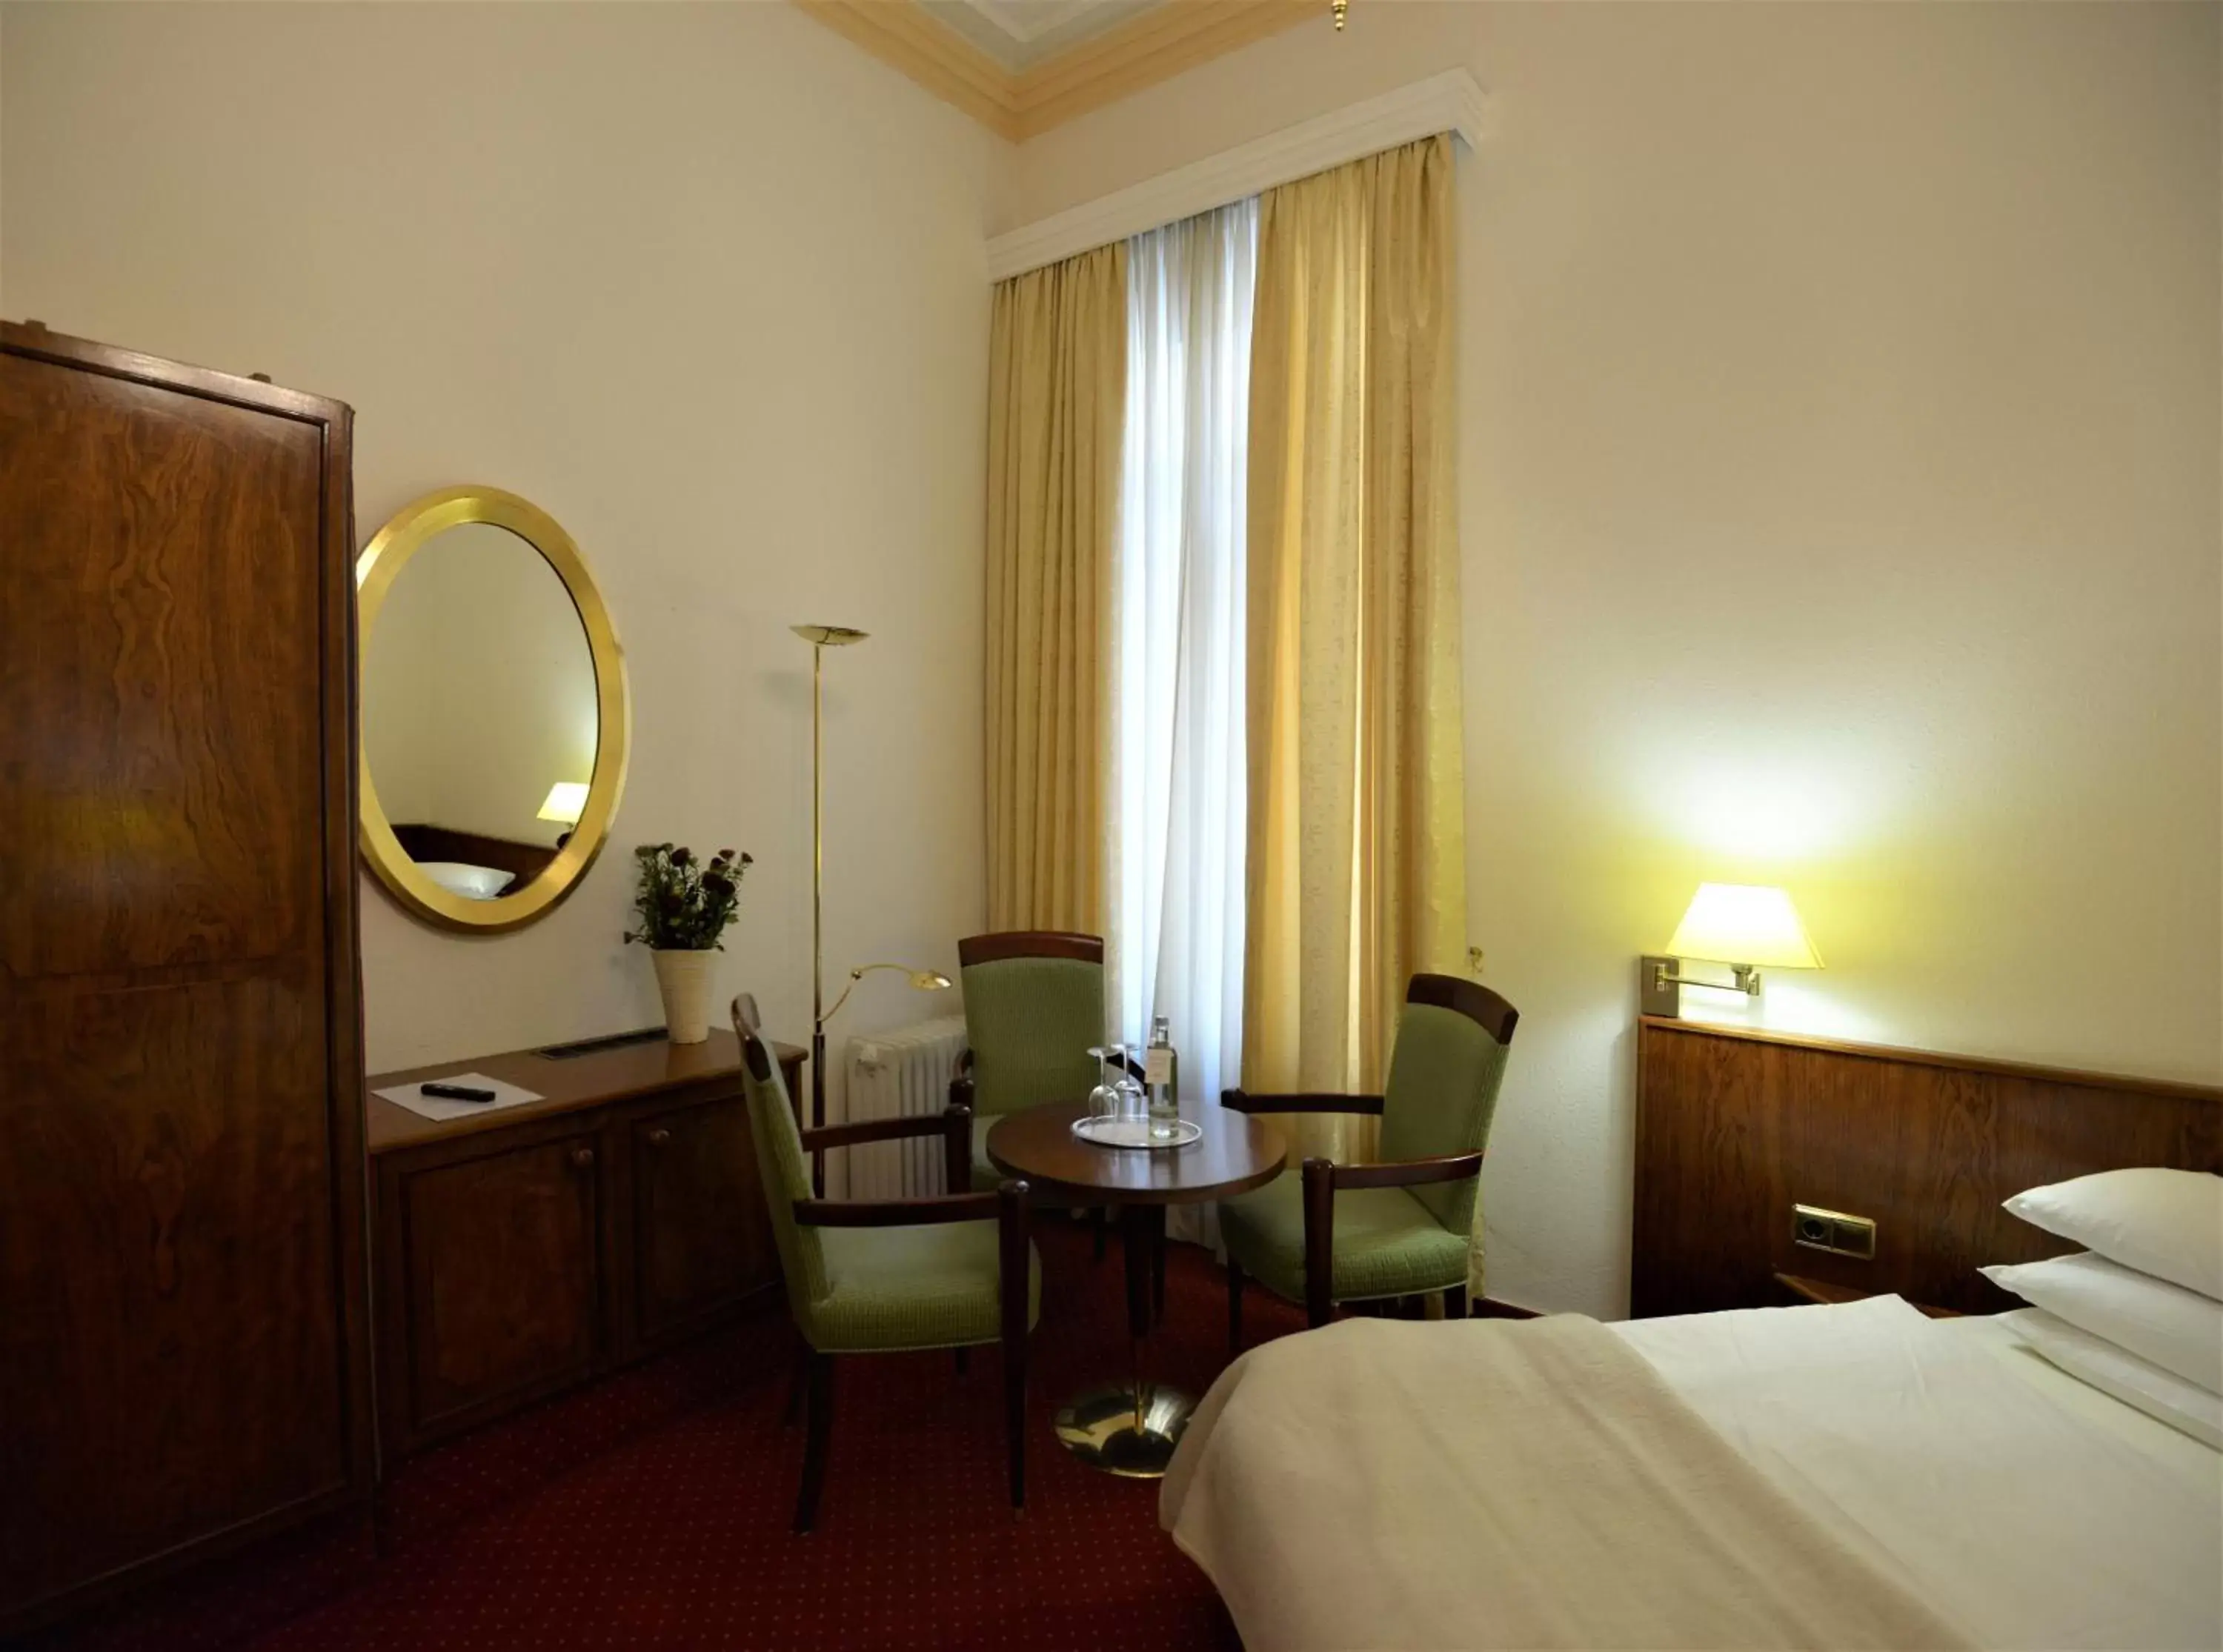 Bed in Hotel am Kochbrunnen